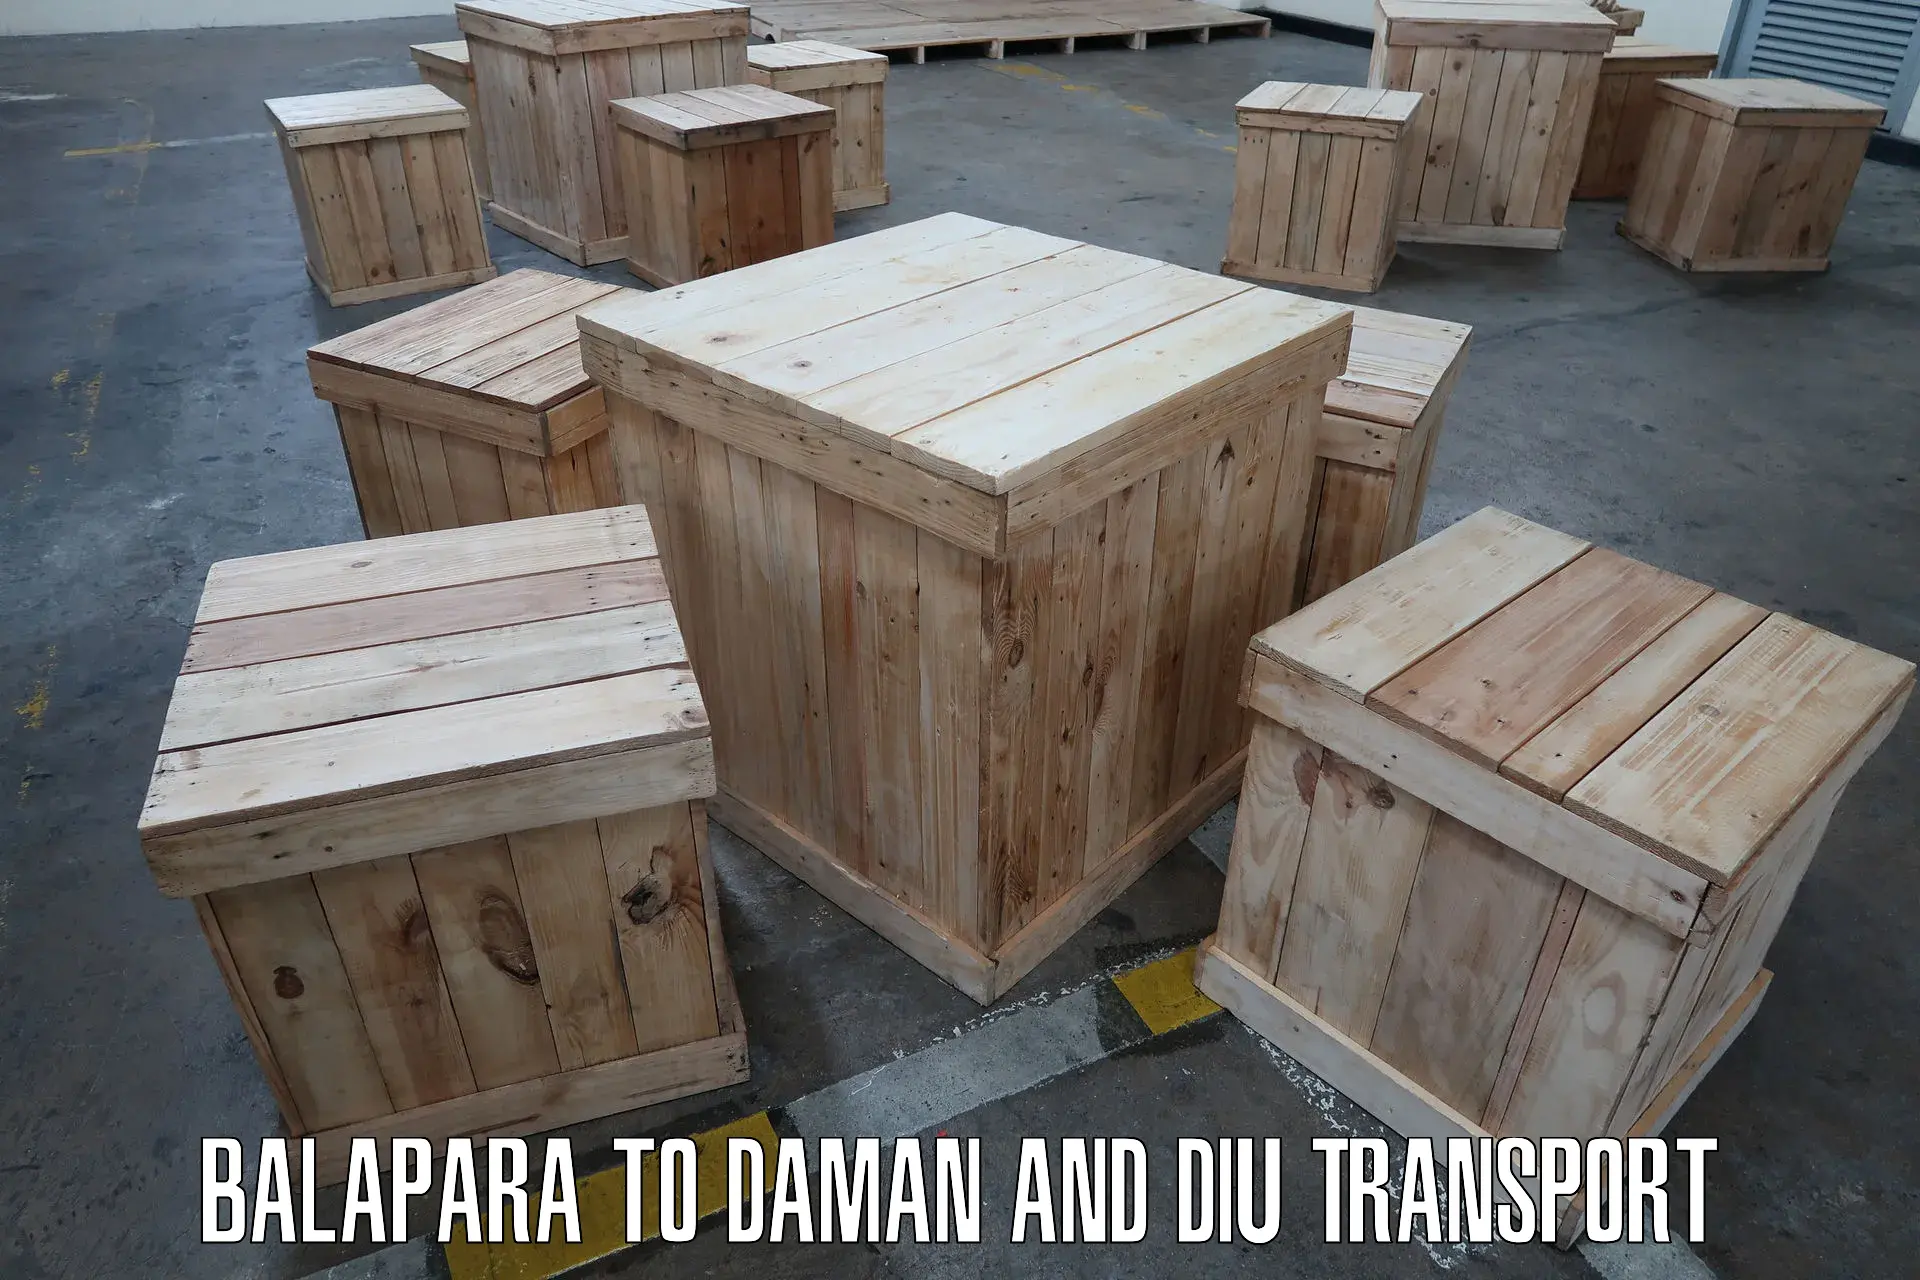 Furniture transport service Balapara to Daman and Diu